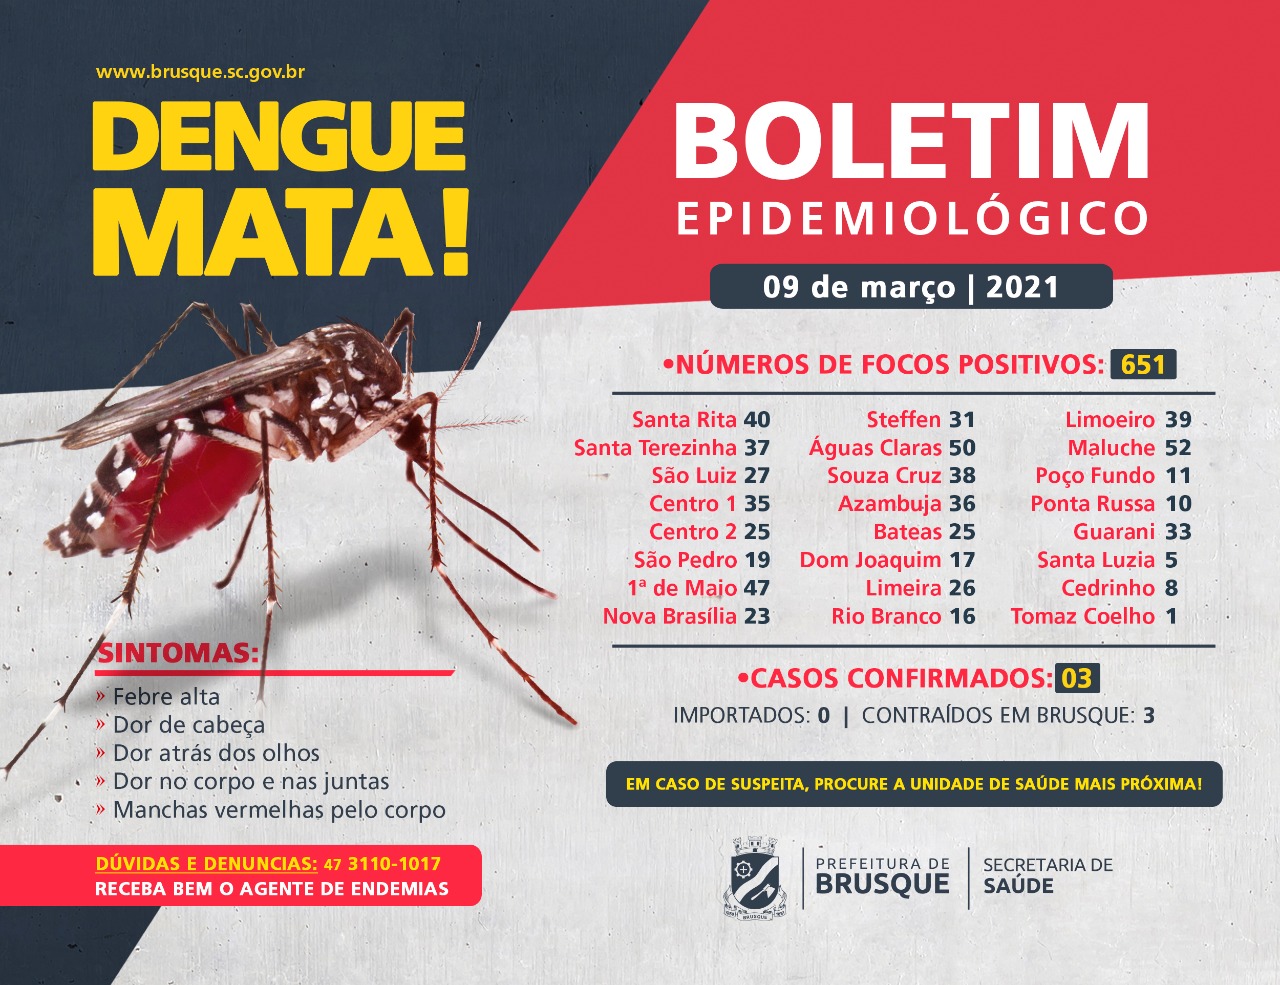 Confira o boletim epidemiológico da dengue desta terça-feira (9)